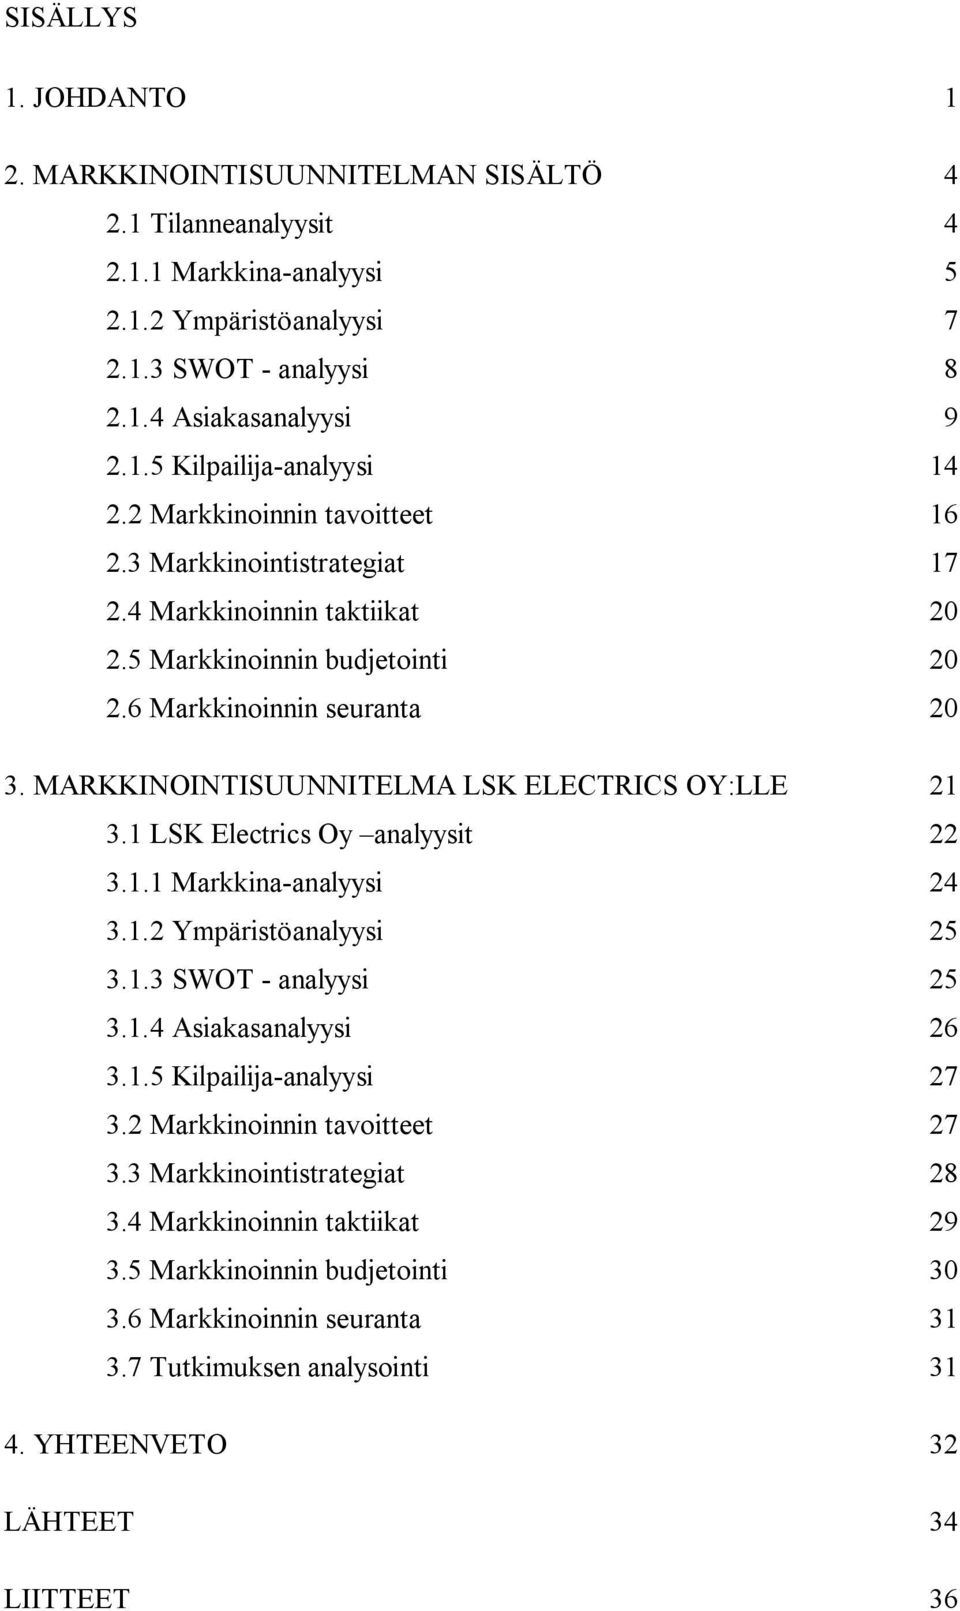 MARKKINOINTISUUNNITELMA LSK ELECTRICS OY:LLE 21 3.1 LSK Electrics Oy analyysit 22 3.1.1 Markkina-analyysi 24 3.1.2 Ympäristöanalyysi 25 3.1.3 SWOT - analyysi 25 3.1.4 Asiakasanalyysi 26 3.1.5 Kilpailija-analyysi 27 3.